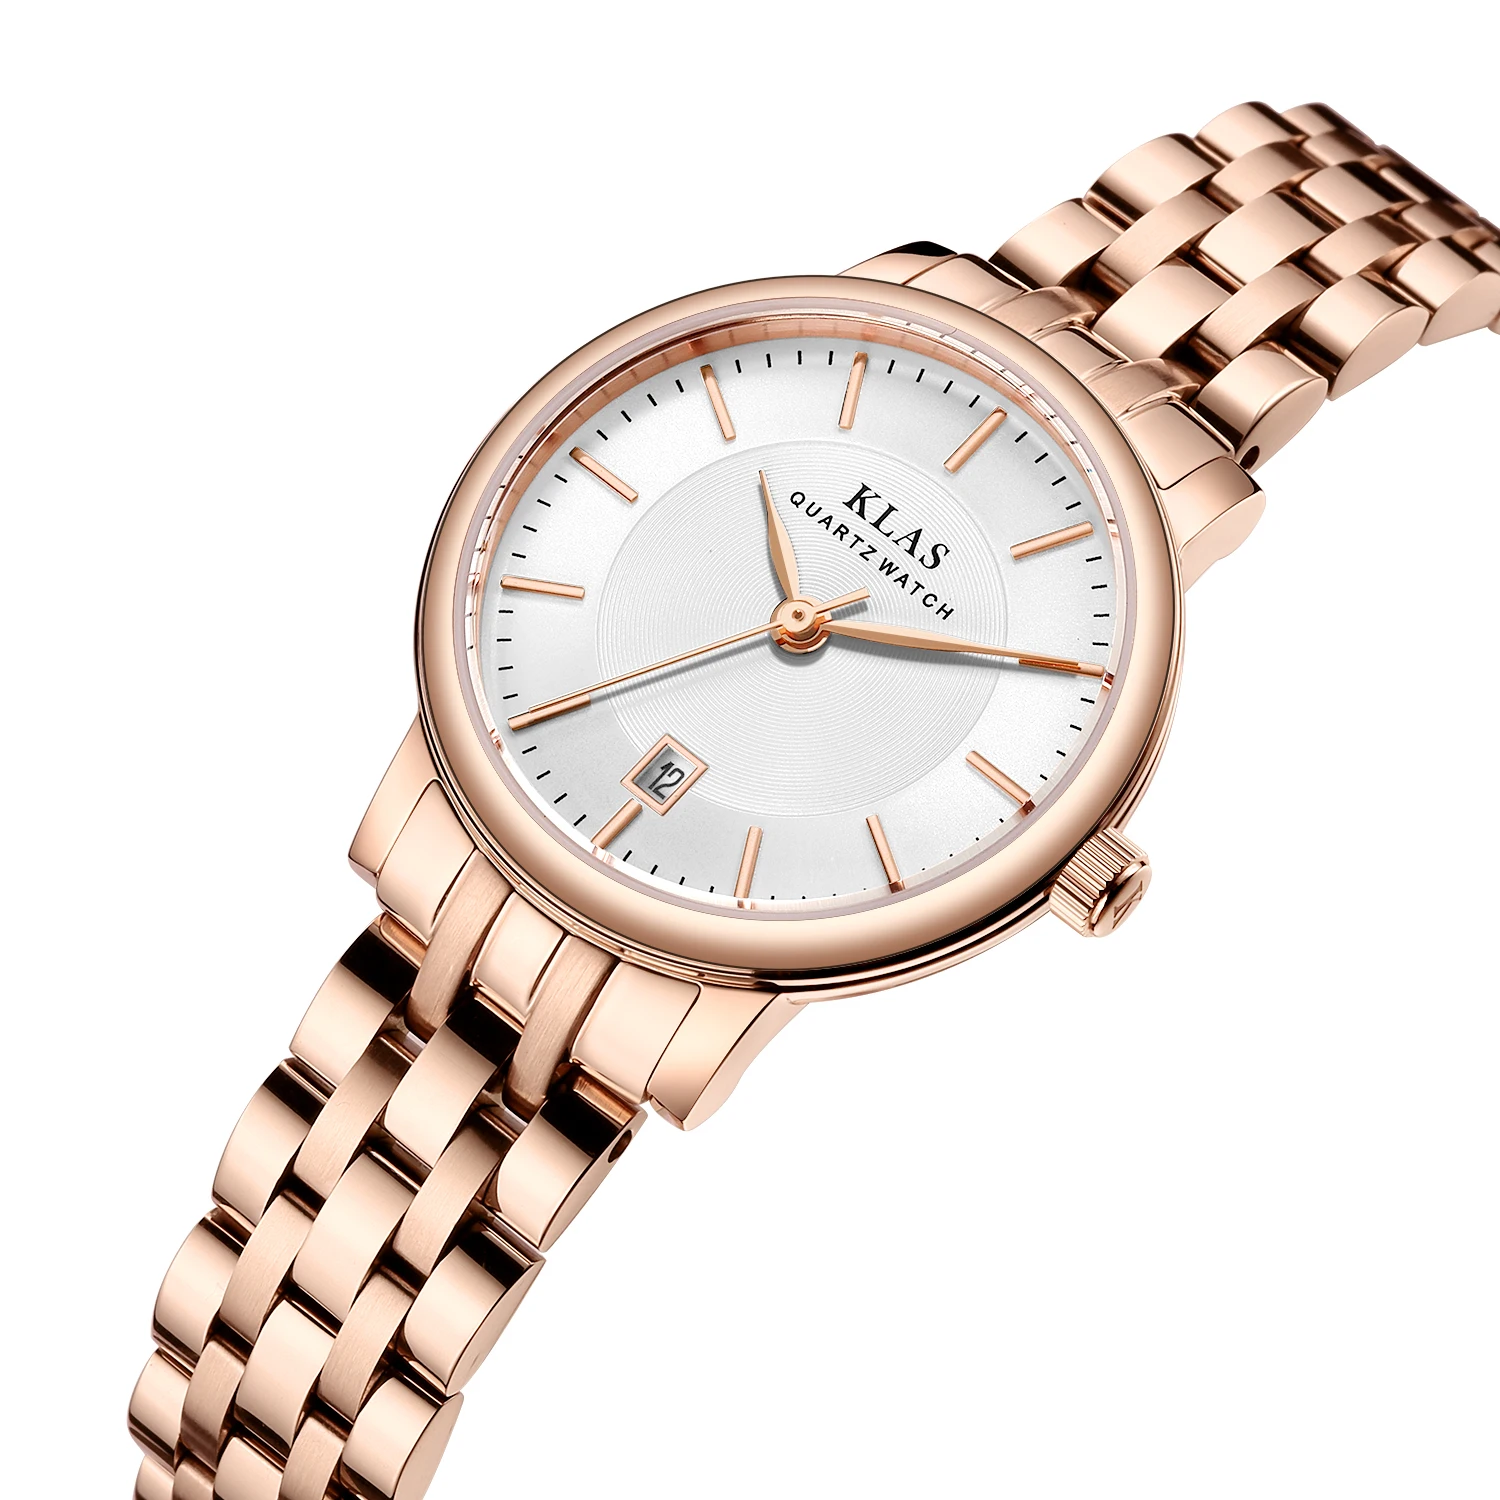 Design Stainless Steel Fashion Gift Women's Quartz Watch with Dress KLAS brand